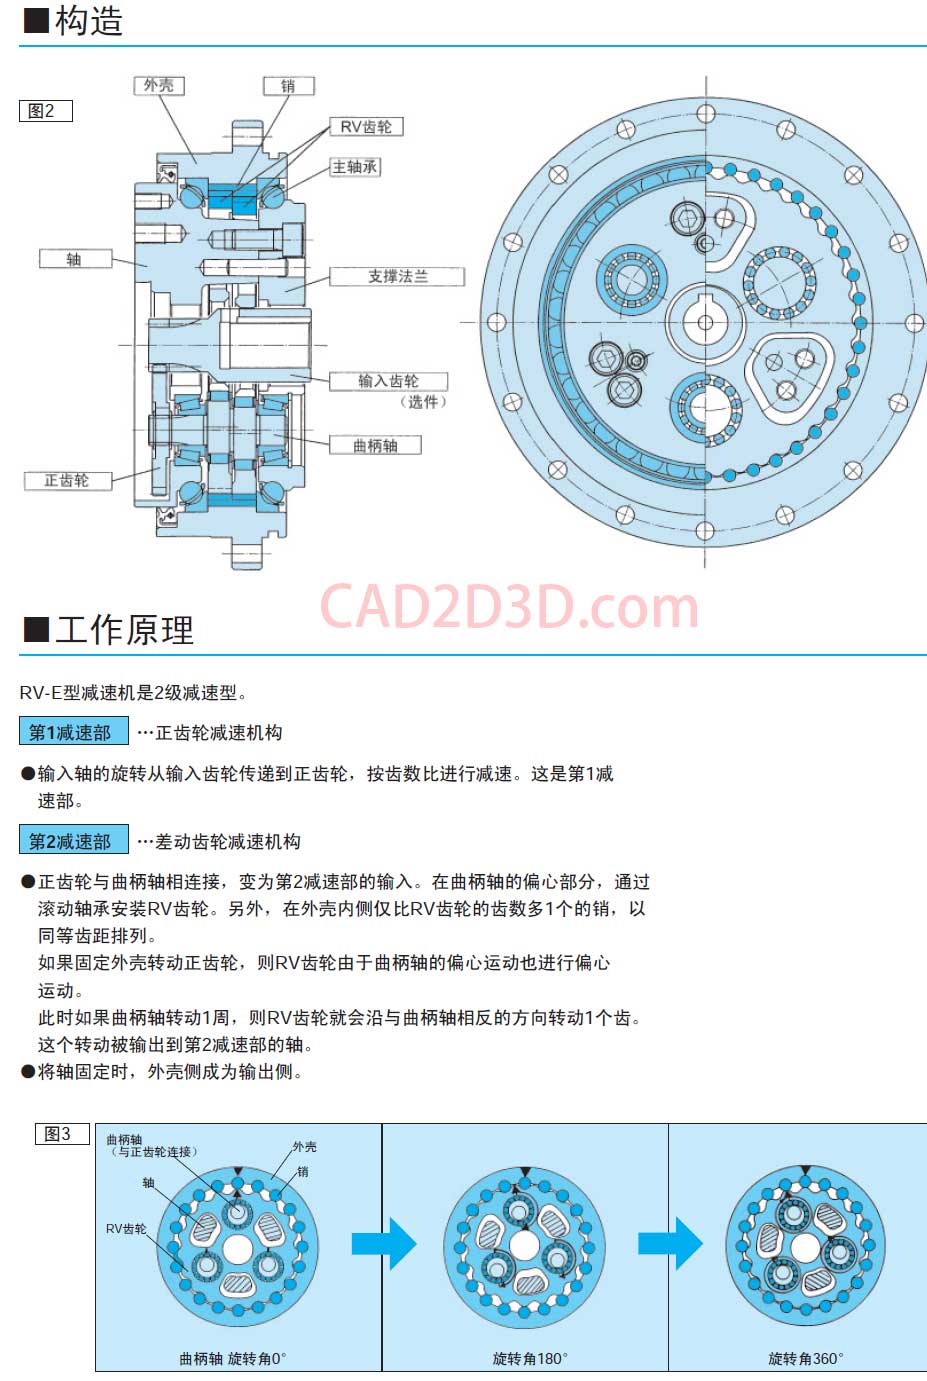 日本纳博特斯克 Nabtesco RV减速机选型手册下载 应用在机器人关节处